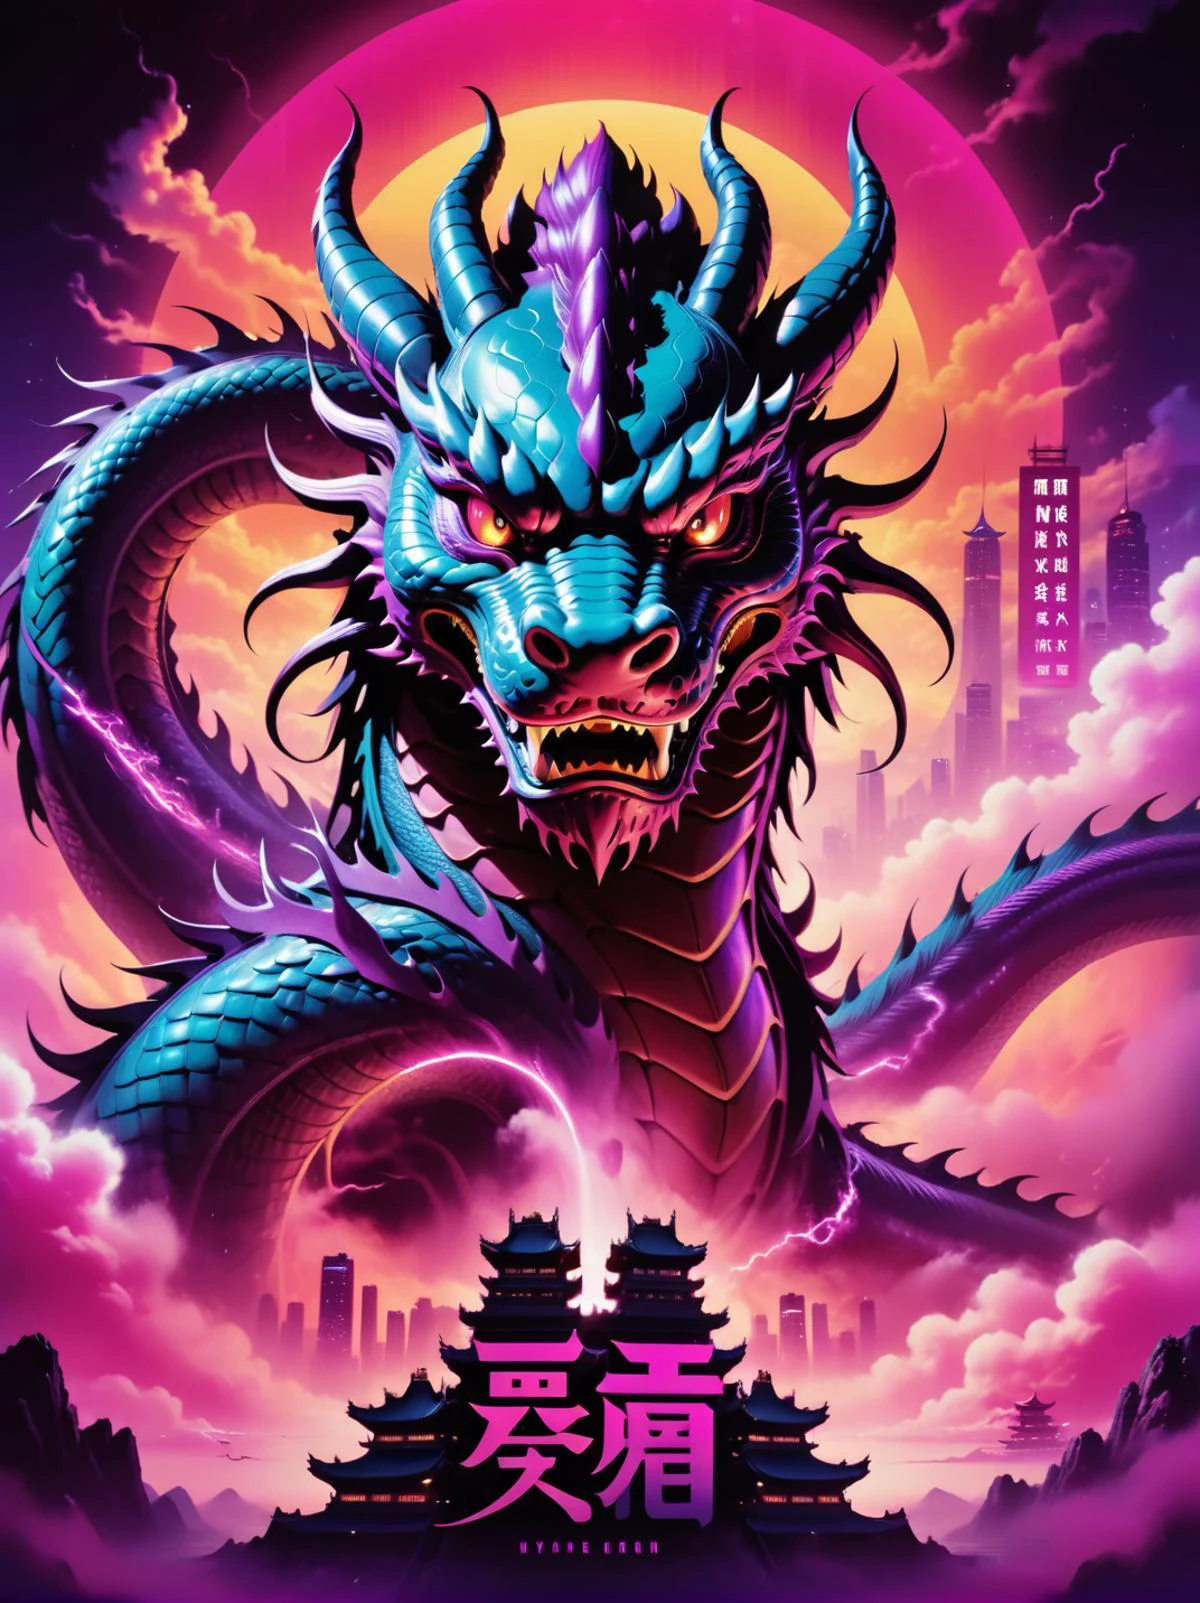 ネオンpunk style movie poster),(中国語のテキスト, "龍の年"),(中国の龍をモチーフにした, 空, 飛行), サイバーパンク, ヴェイパーウェイヴ, ネオン, 雰囲気, 活気のある, 驚くほど美しいです, 鮮明な, 詳細, 洗練された, モダンな, マゼンタのハイライト, 濃い紫色の影, ハイコントラスト, 映画のような, ultra 詳細, 複雑な, プロ, ファンタジー, エキサイティング, ダイナミックなTシャツデザイン, TシャツデザインAF